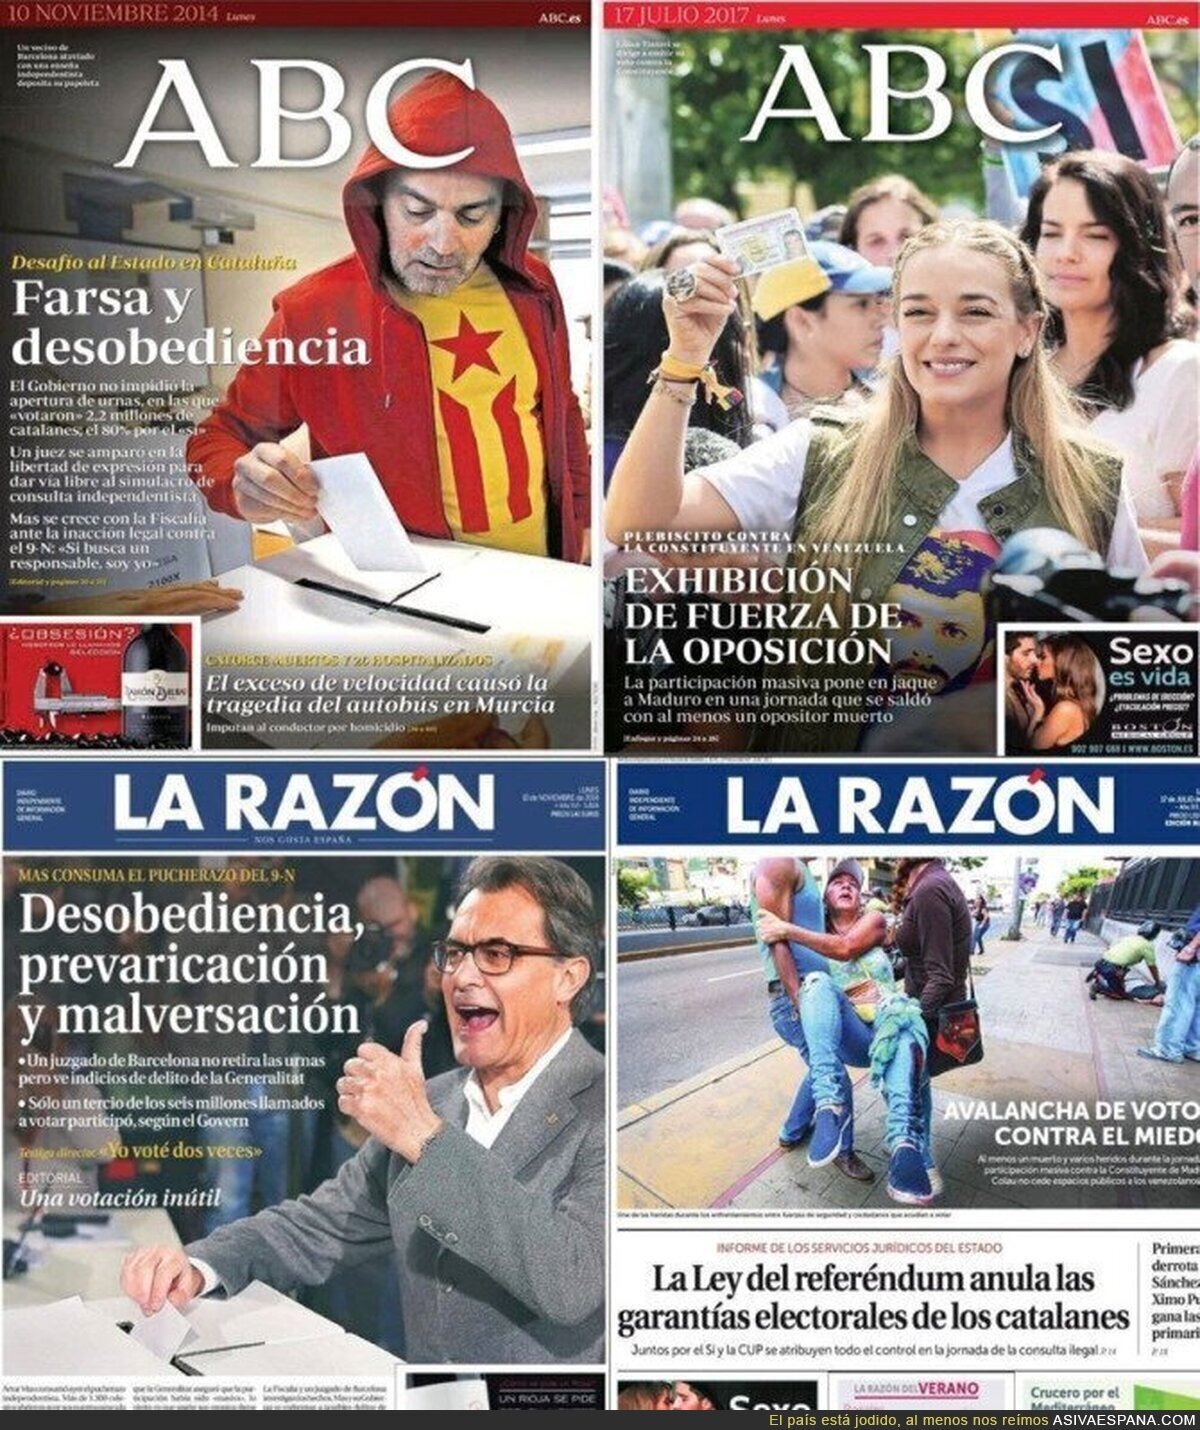 ABC y La Razón nos muestra el doble rasero con los catalanes y venezolanos a la hora de votar